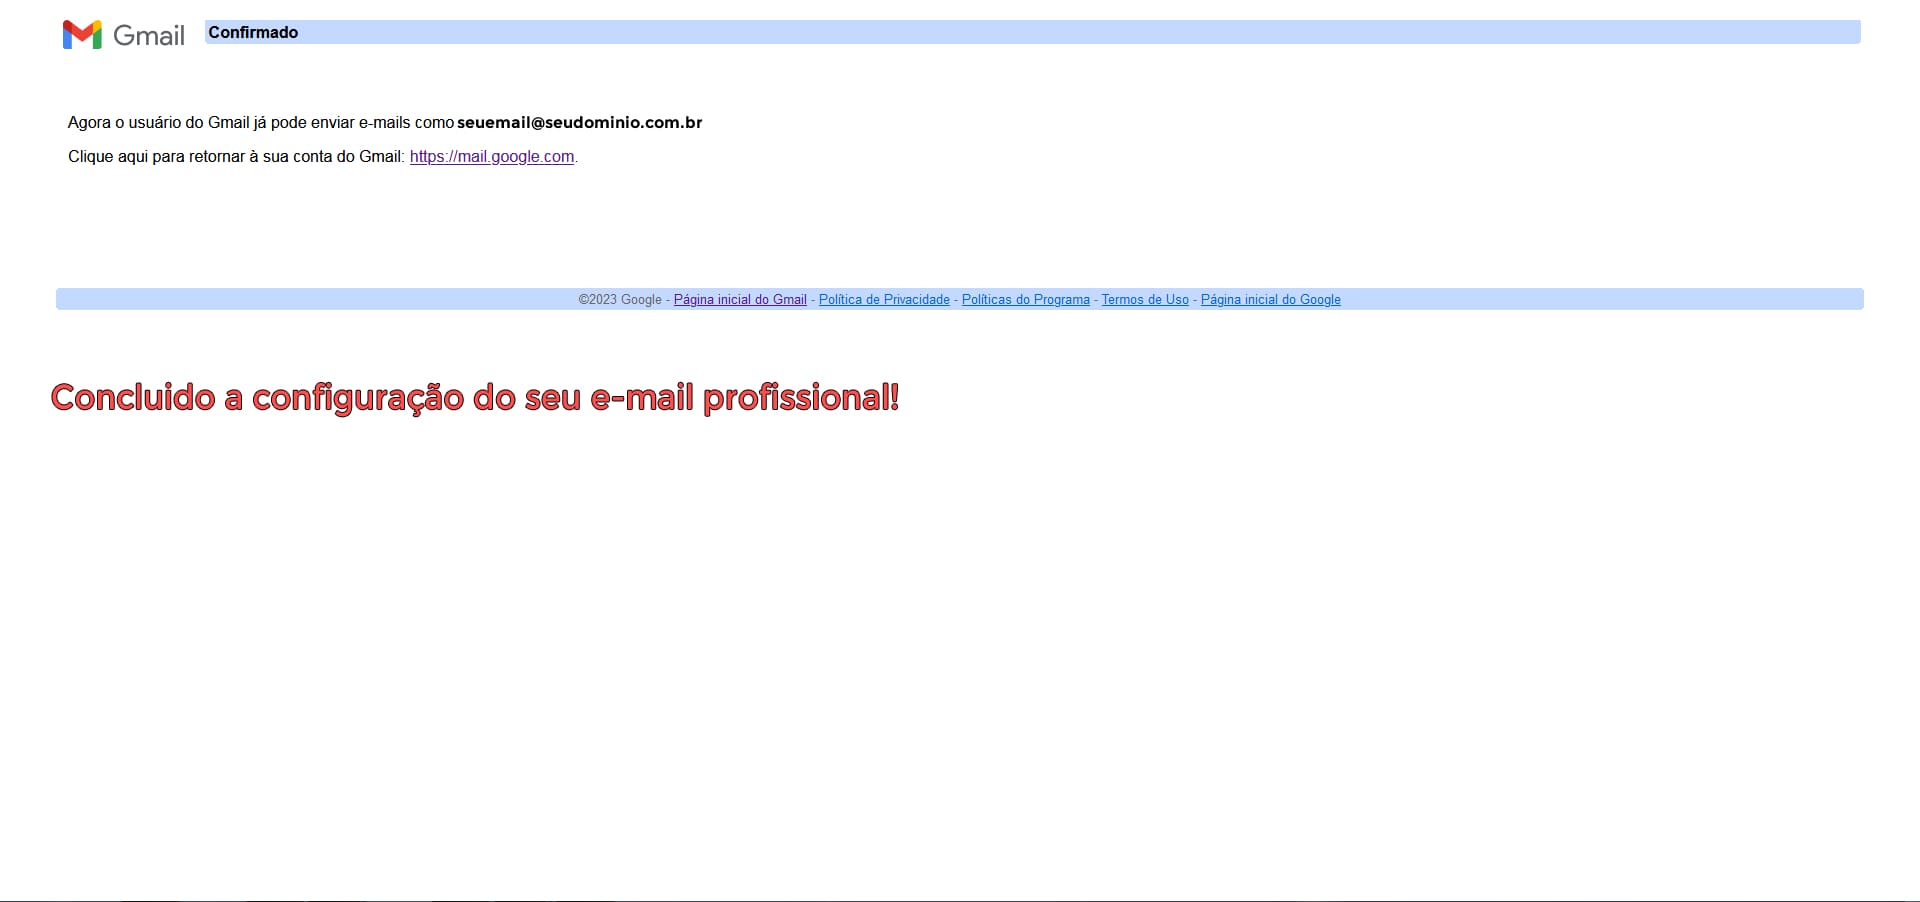 Imagem mostrando que finalizou a confirmação do e-mail profissional no Gmail